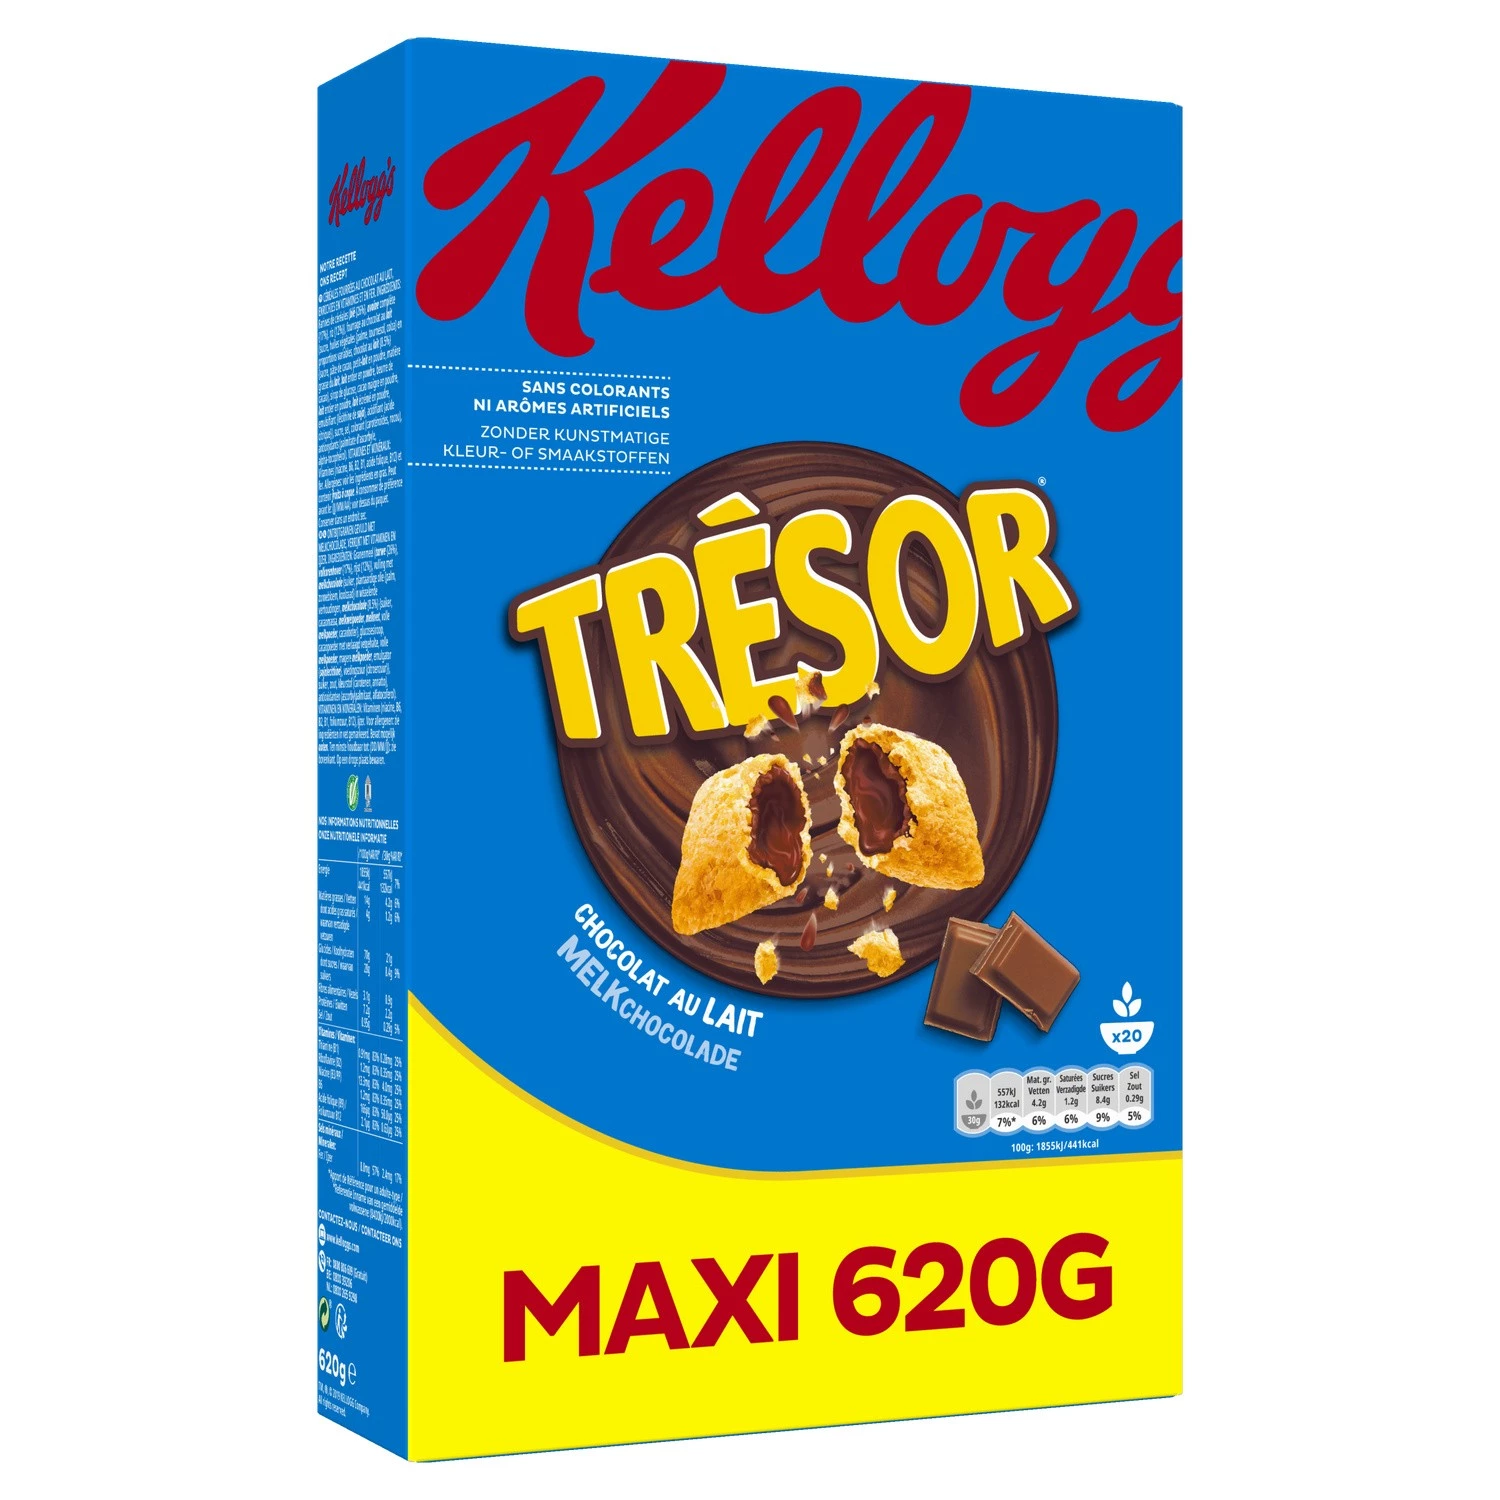 Tresor Choco Milk 620g